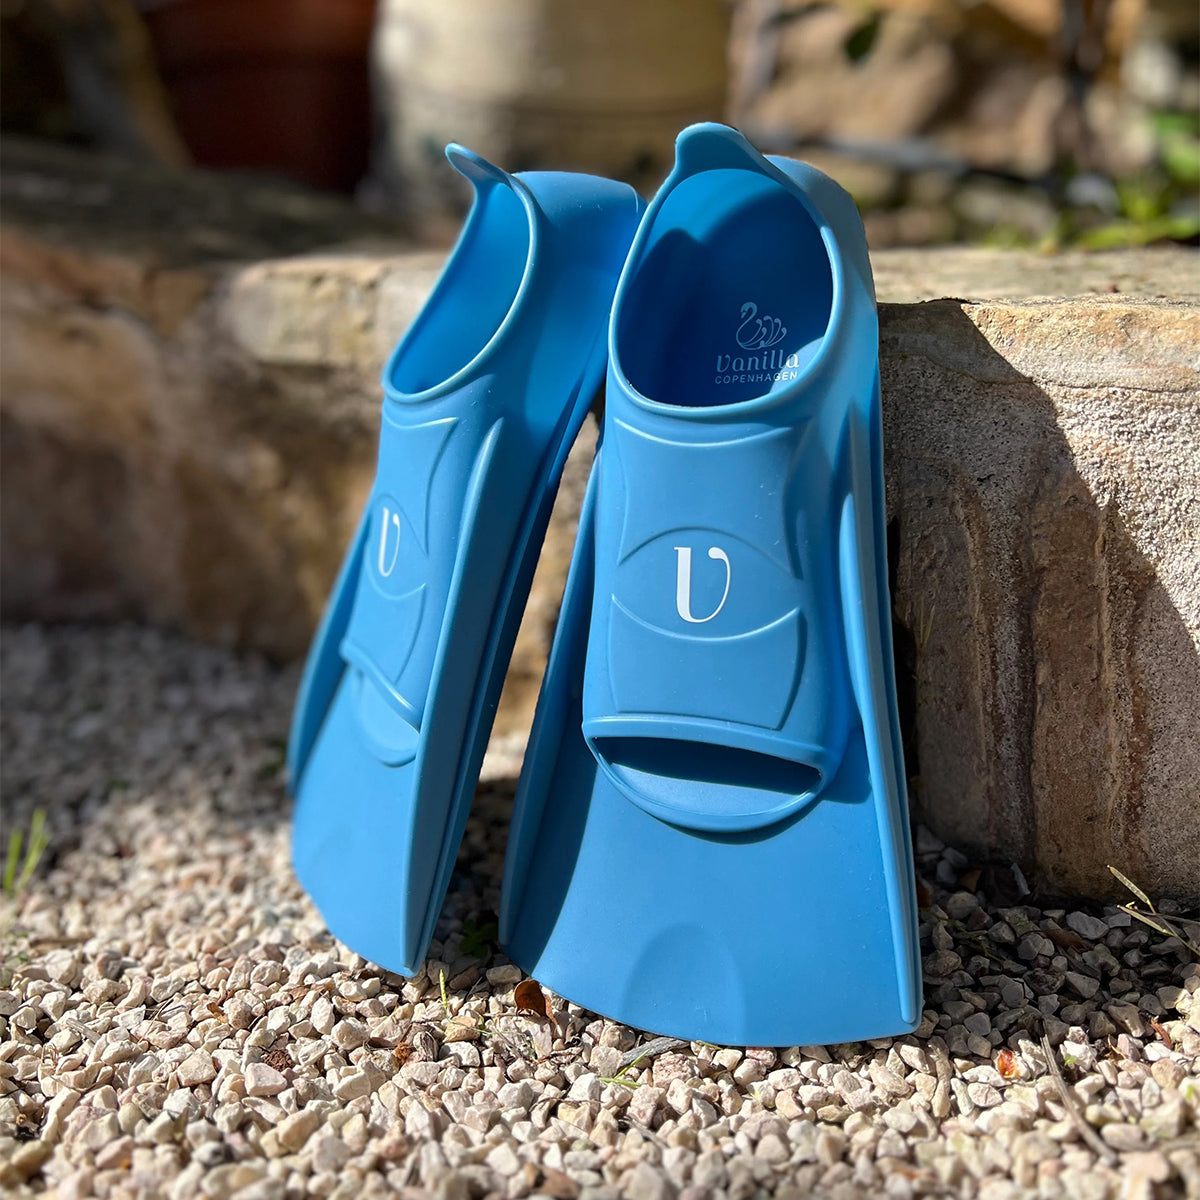 De flippers Blue Shadow van Vanilla Copenhagen ondersteunen in de zwemtraining en bevorderen de zwemvaardigheid. Stabiliteit, ondersteuning en comfort tijdens het zwemmen. Zo wordt duiken nóg leuker! VanZus